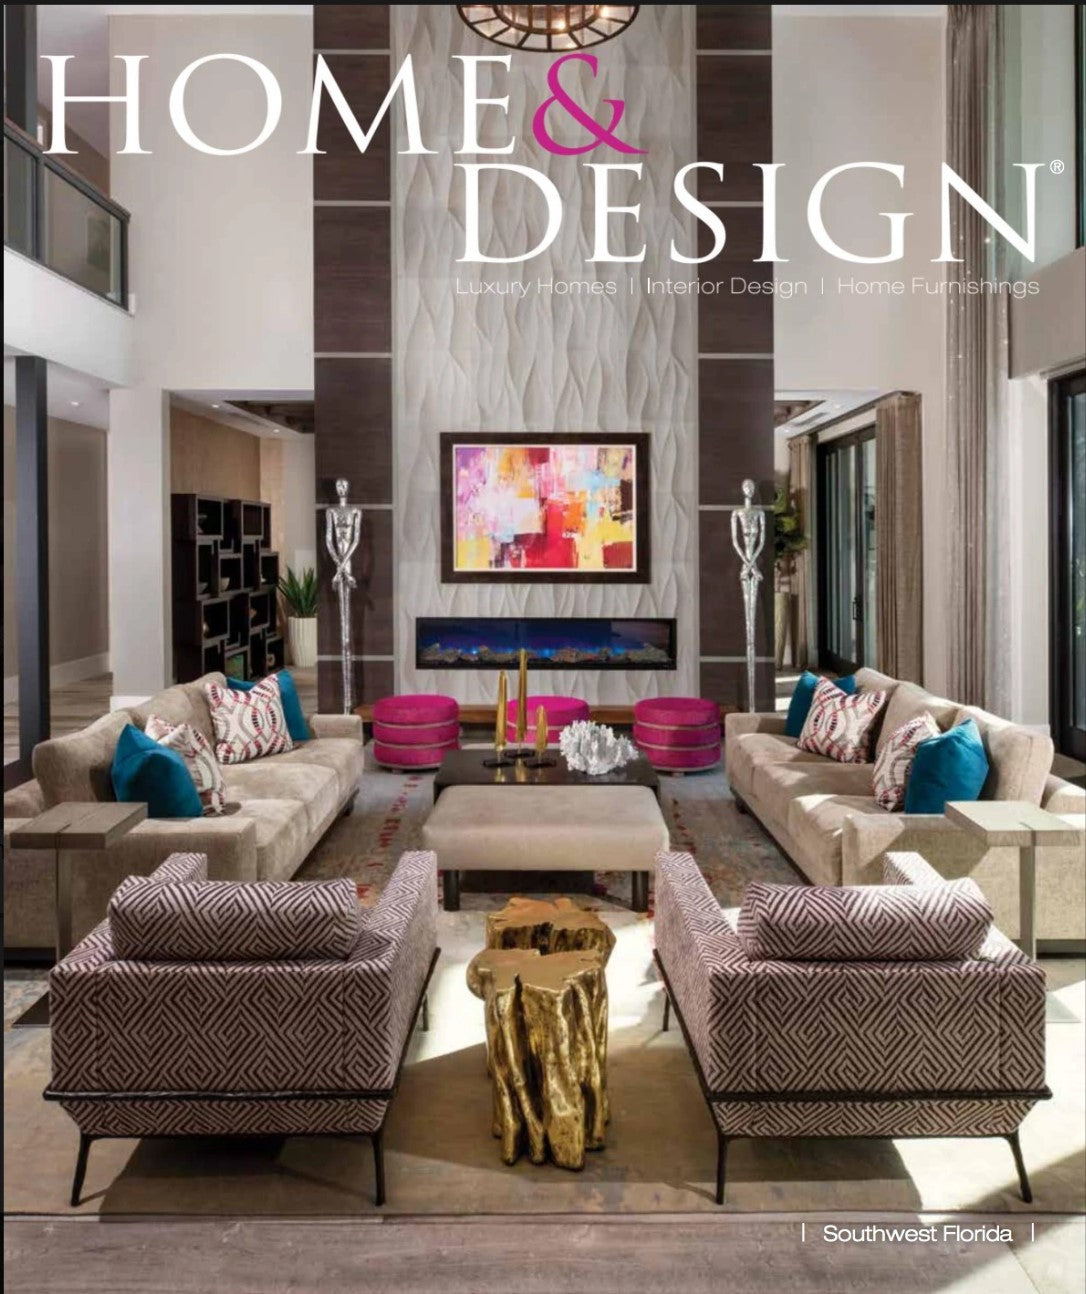 Home & Design 2020 v1